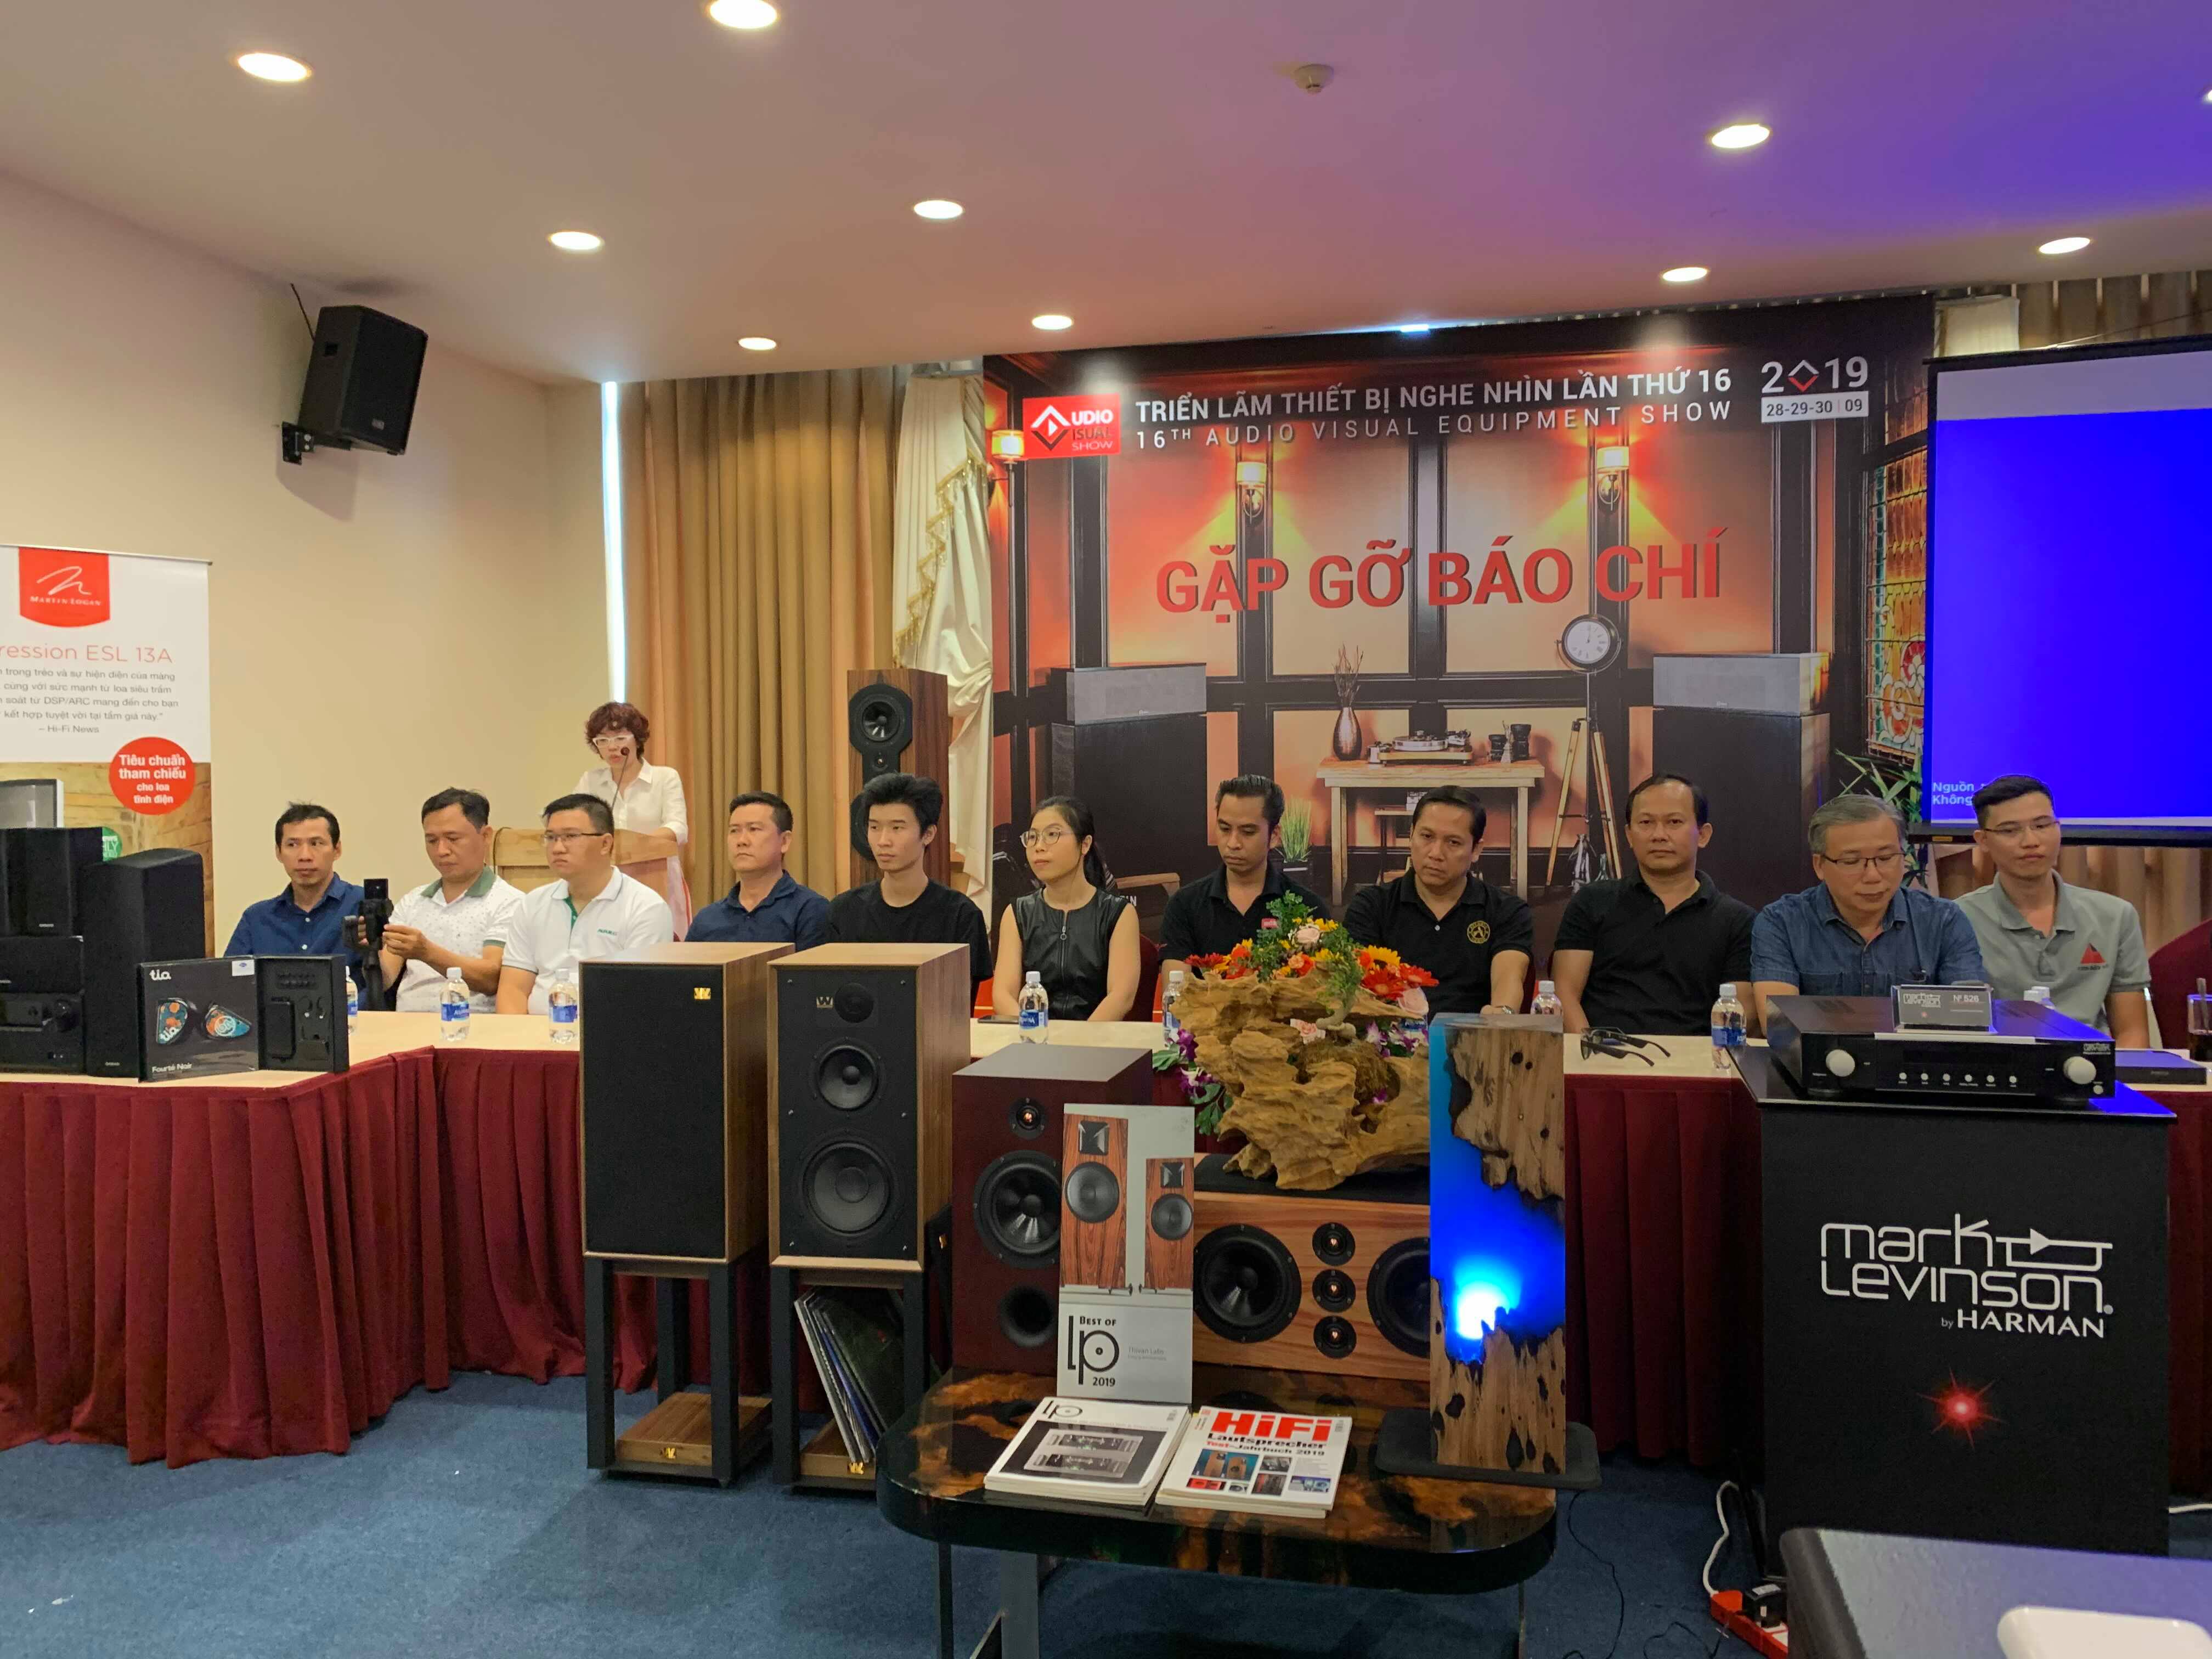 Triển lãm thiết bị nghe nhìn Việt Nam lần thứ 16 - AV Show sẽ diễn ra trong 3 ngày 28-29-30/9/2019